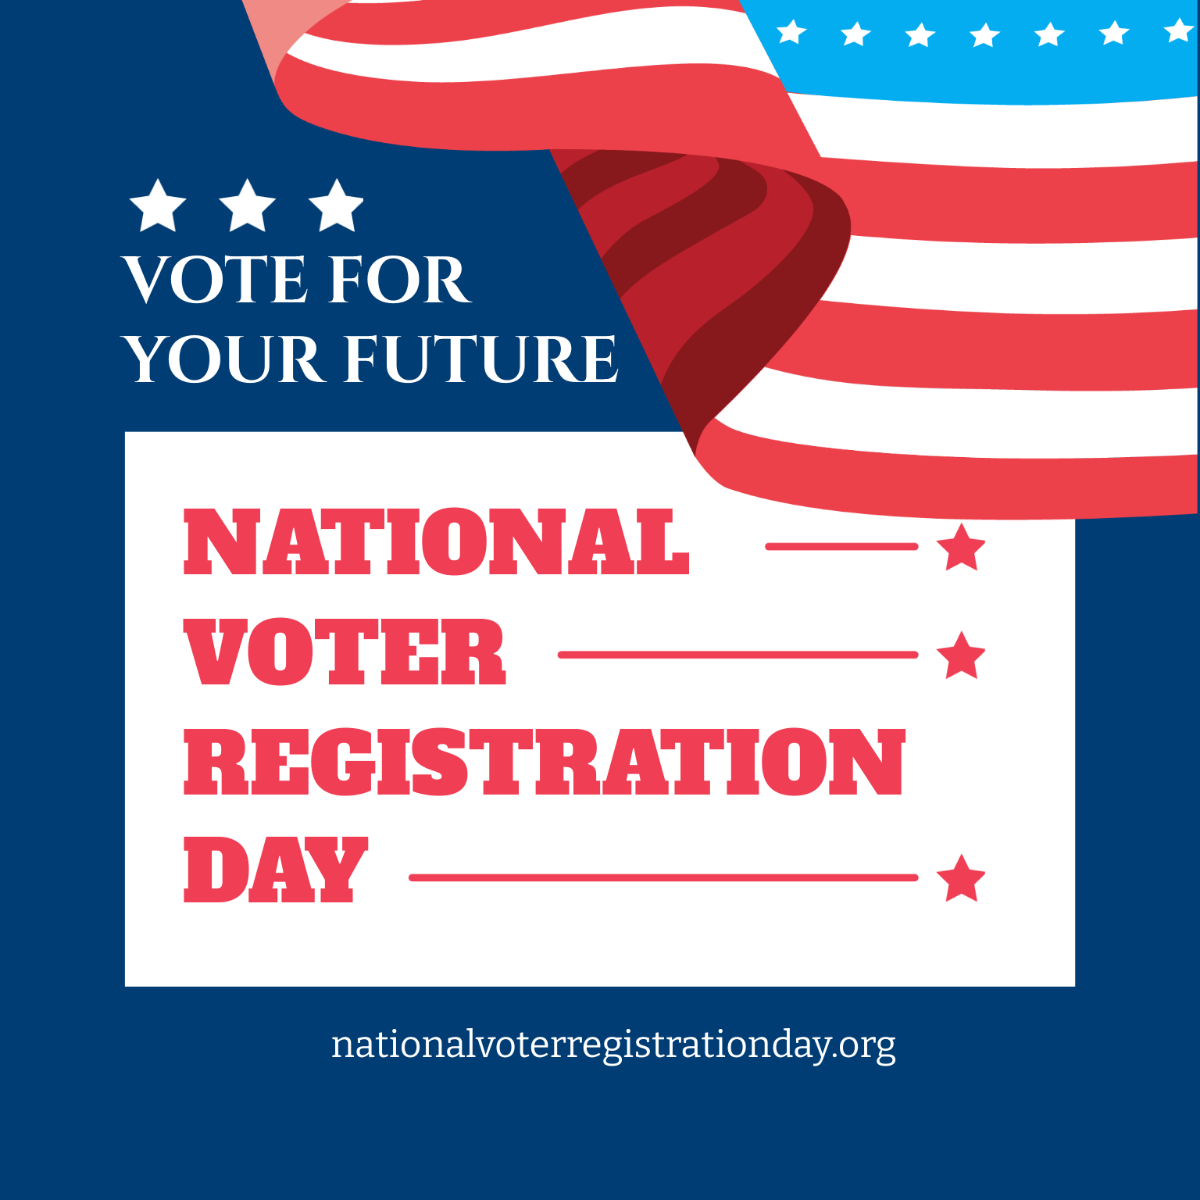 National Voter Registration Day Vector 